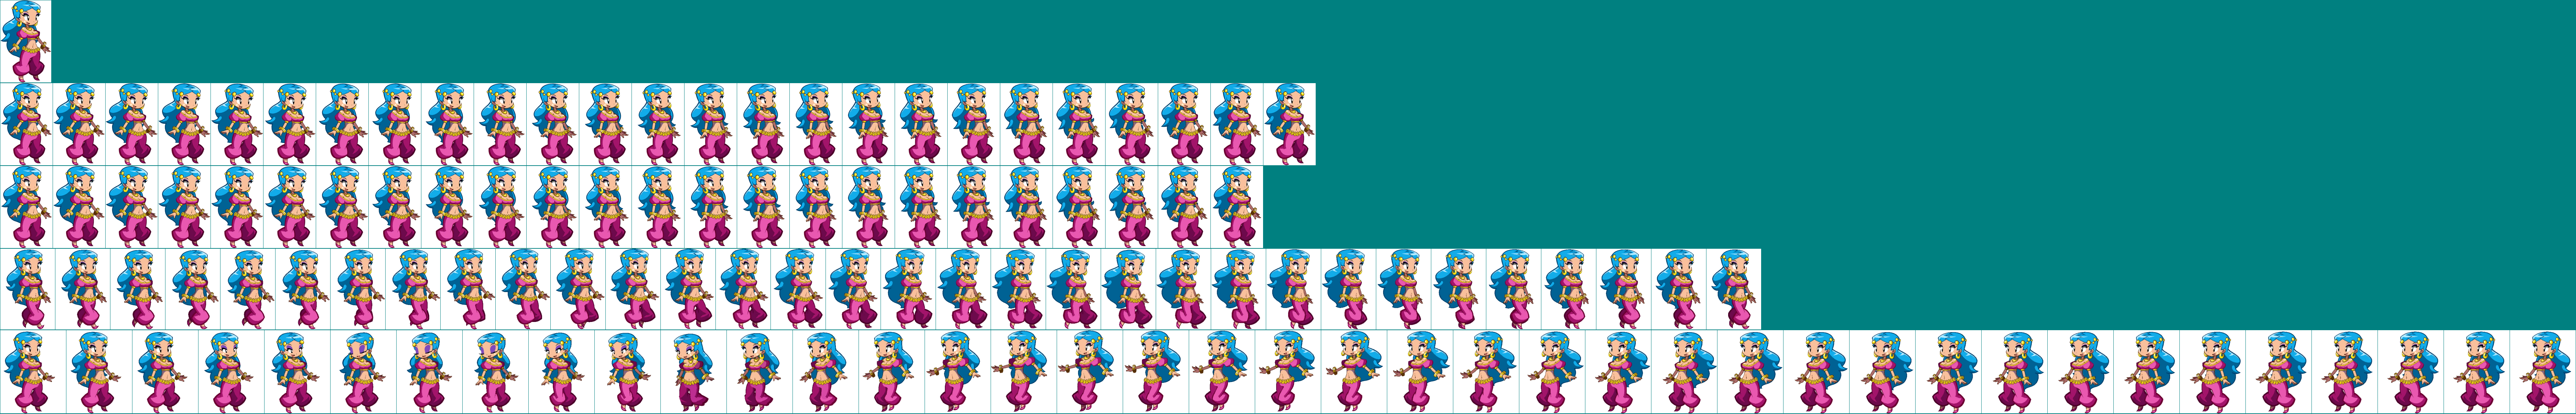 Shantae: Half-Genie Hero - Dancer